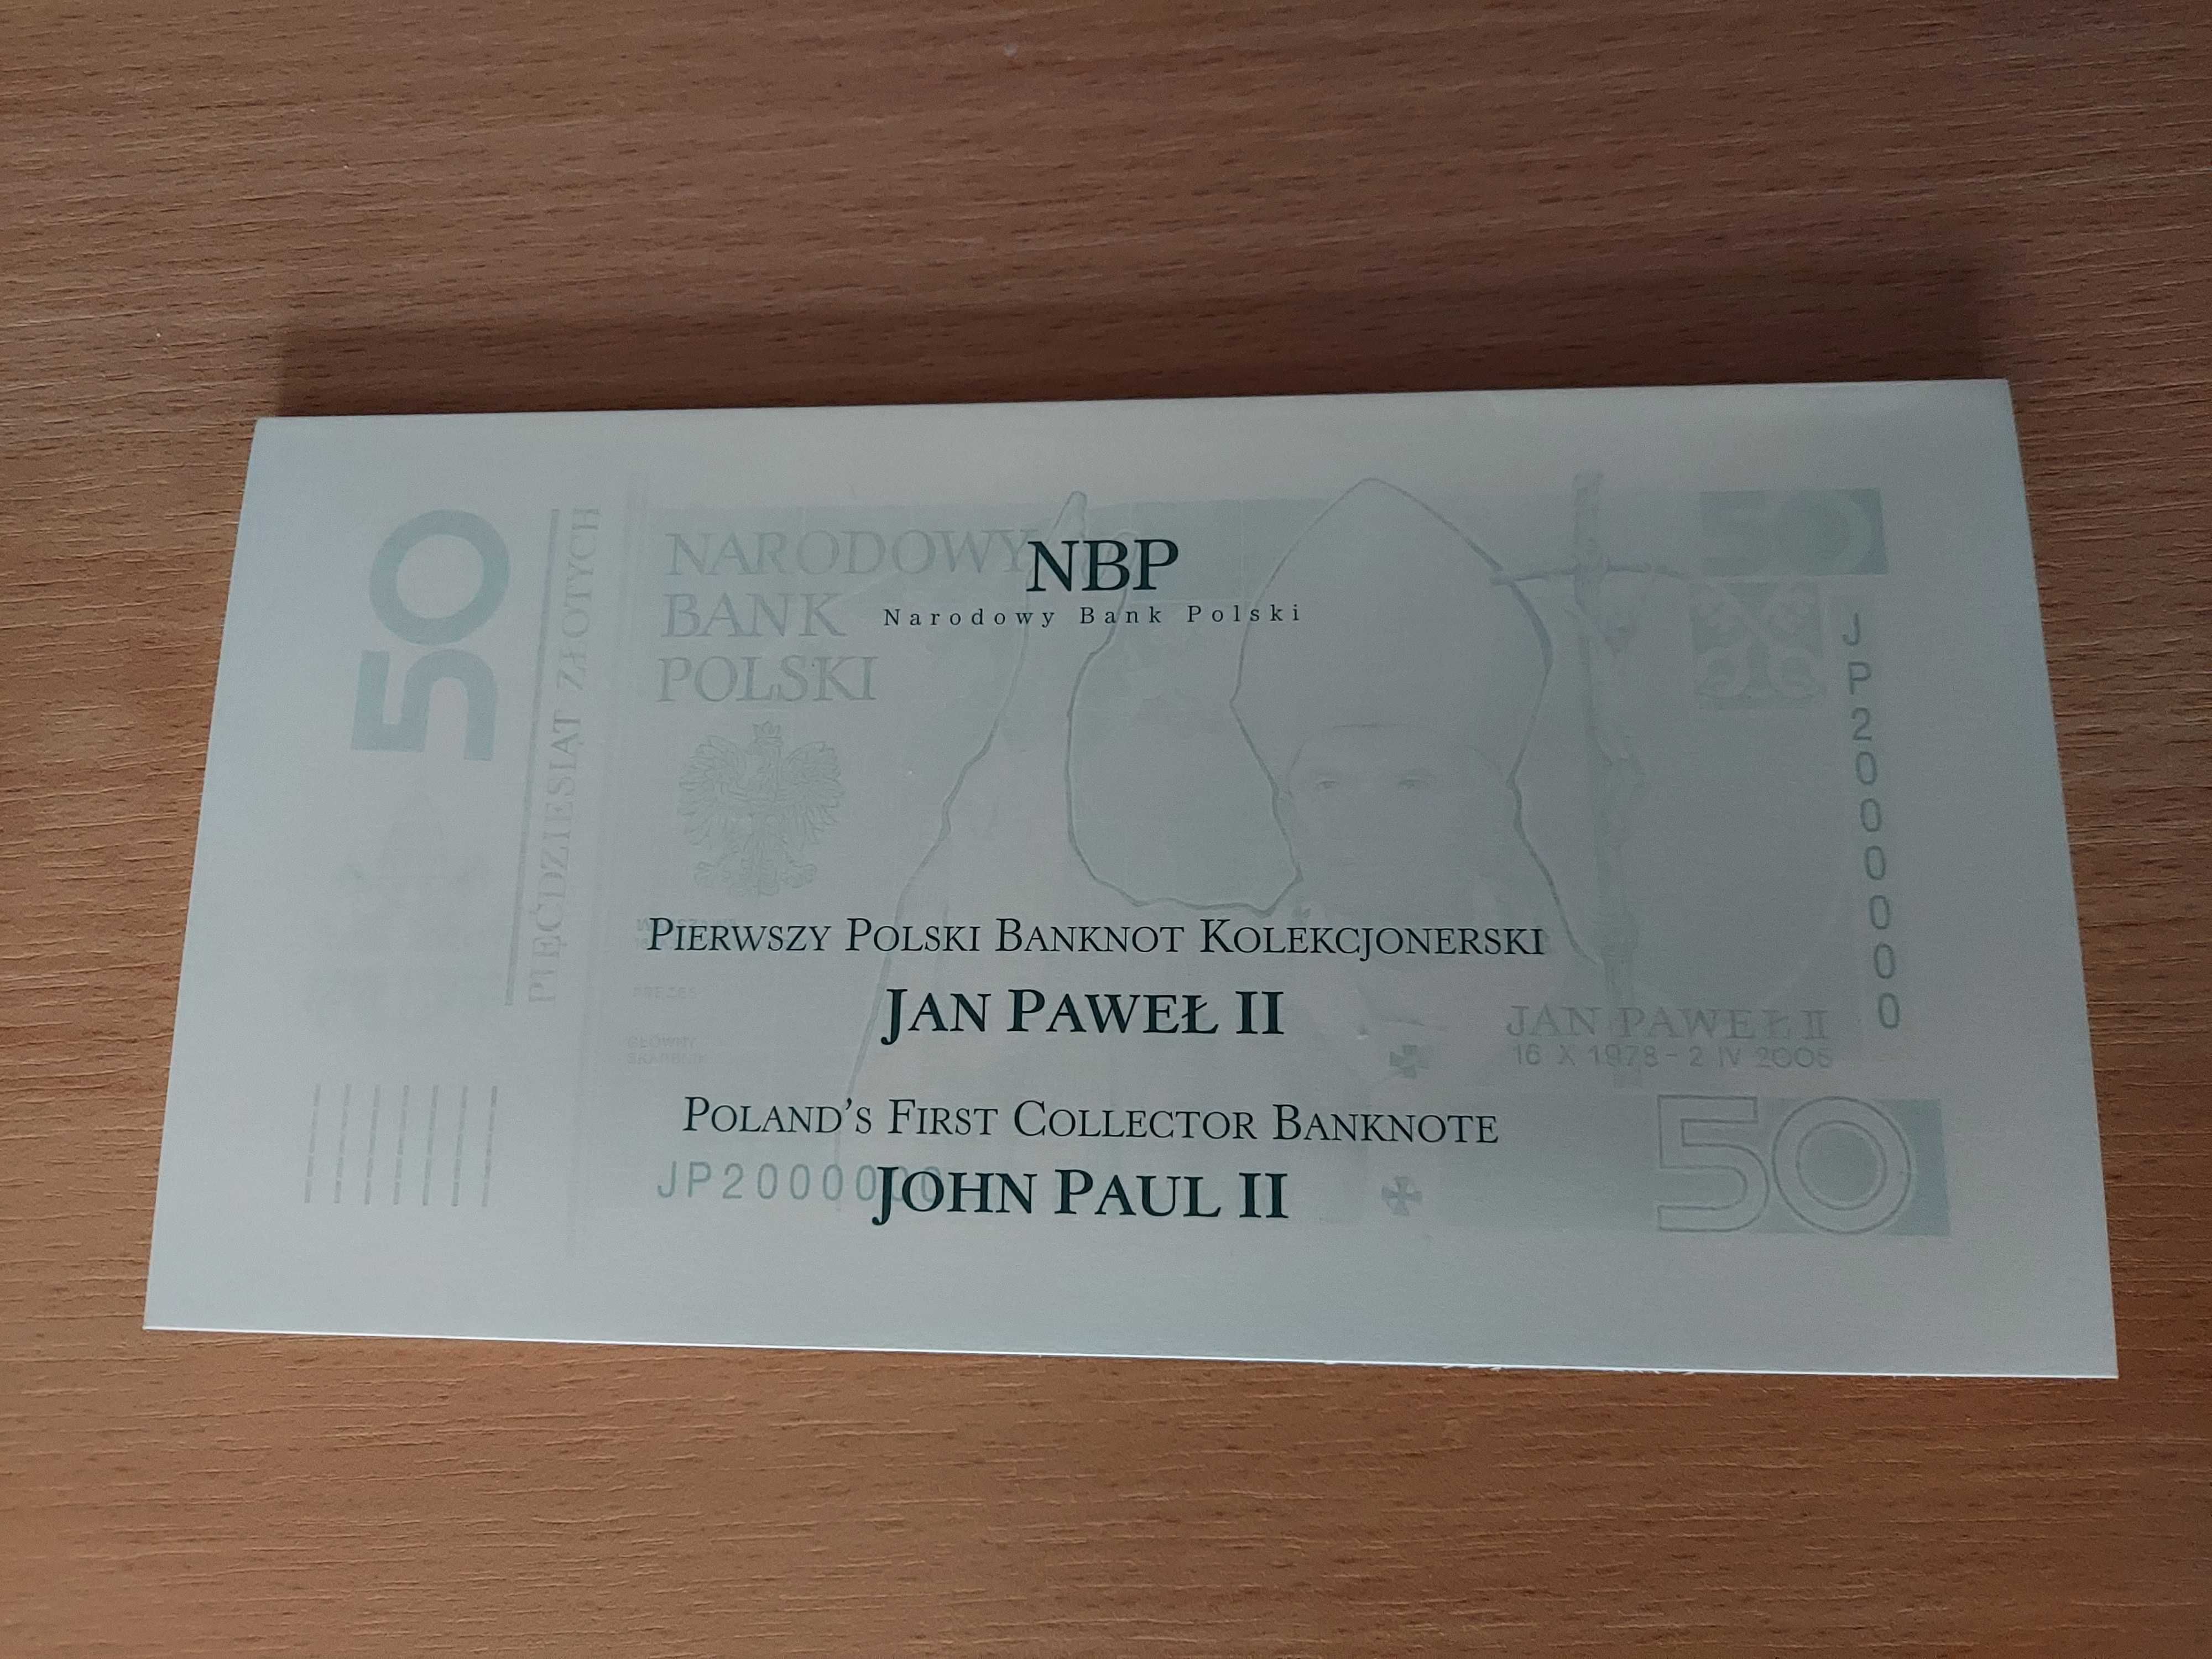 Banknot Kolekcjonerski 50 zł Jan Paweł ll NBP